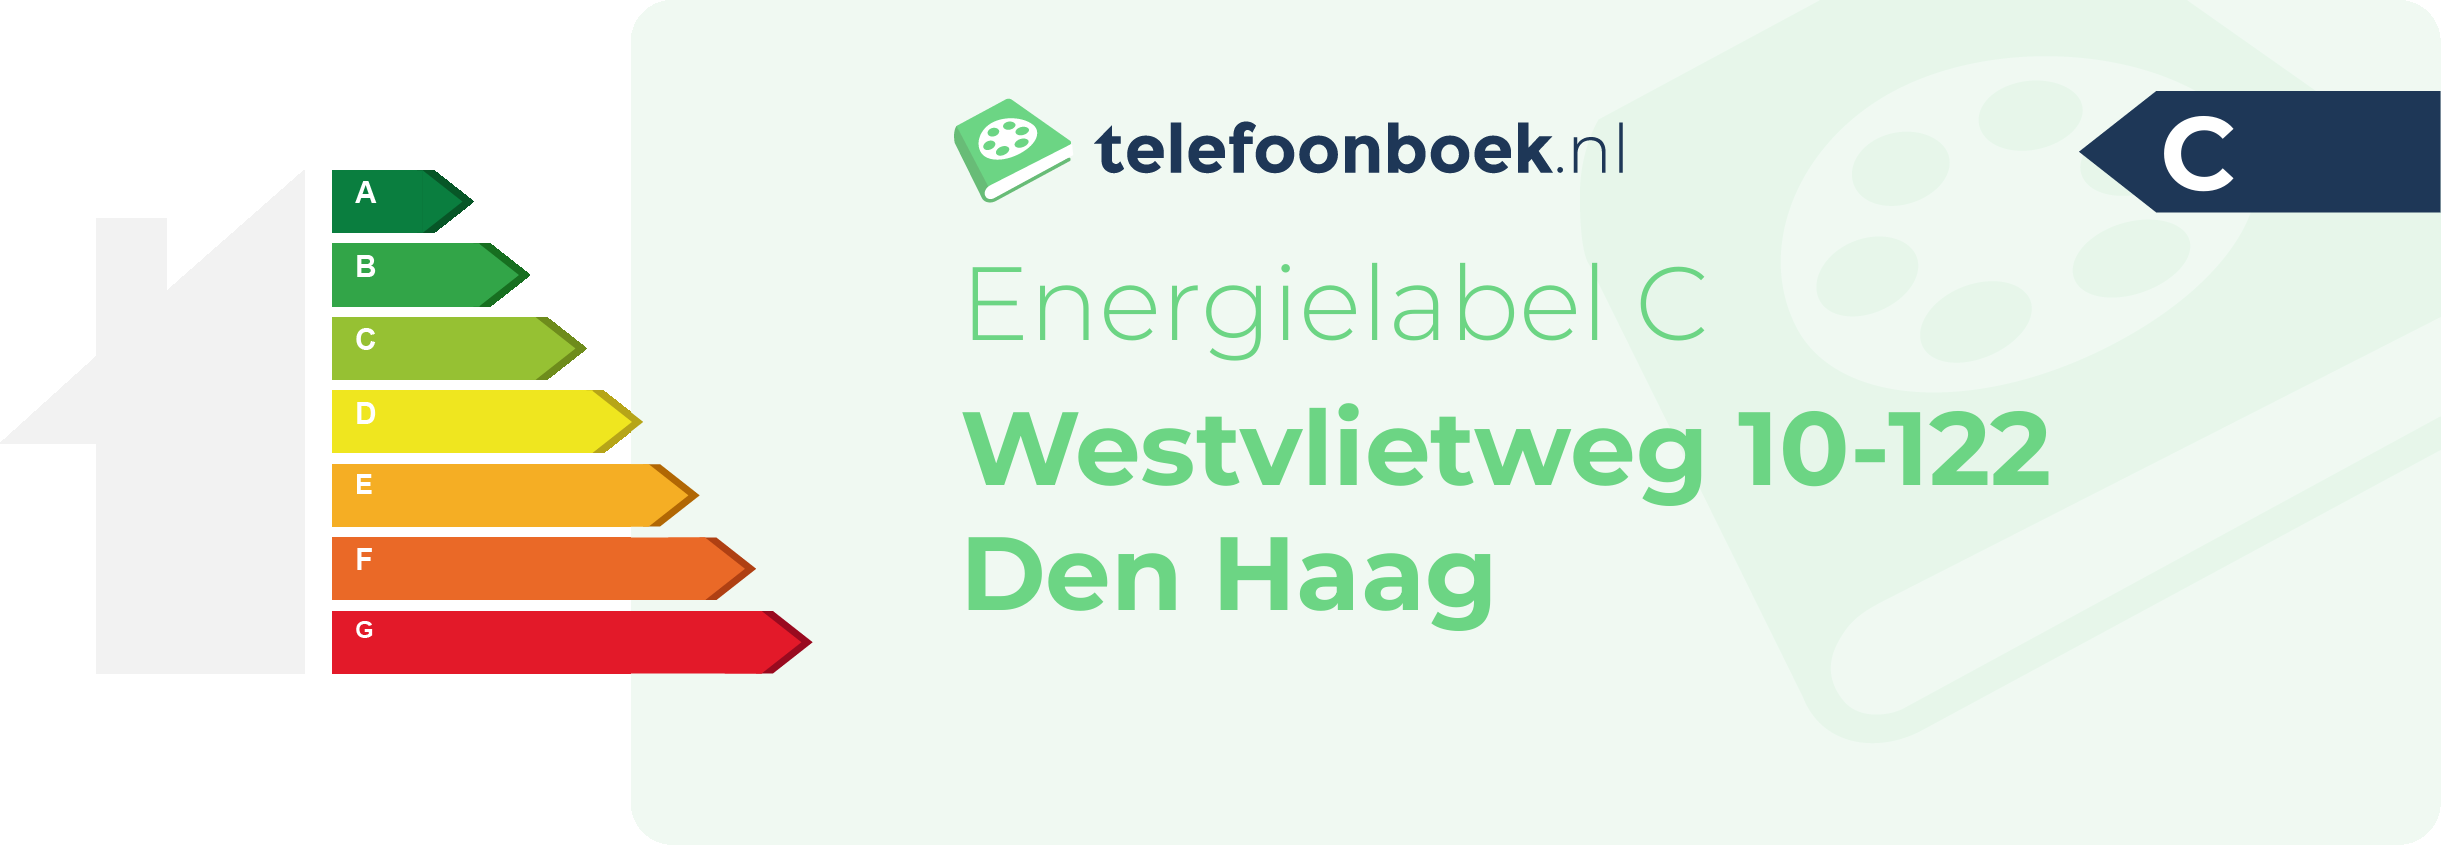 Energielabel Westvlietweg 10-122 Den Haag